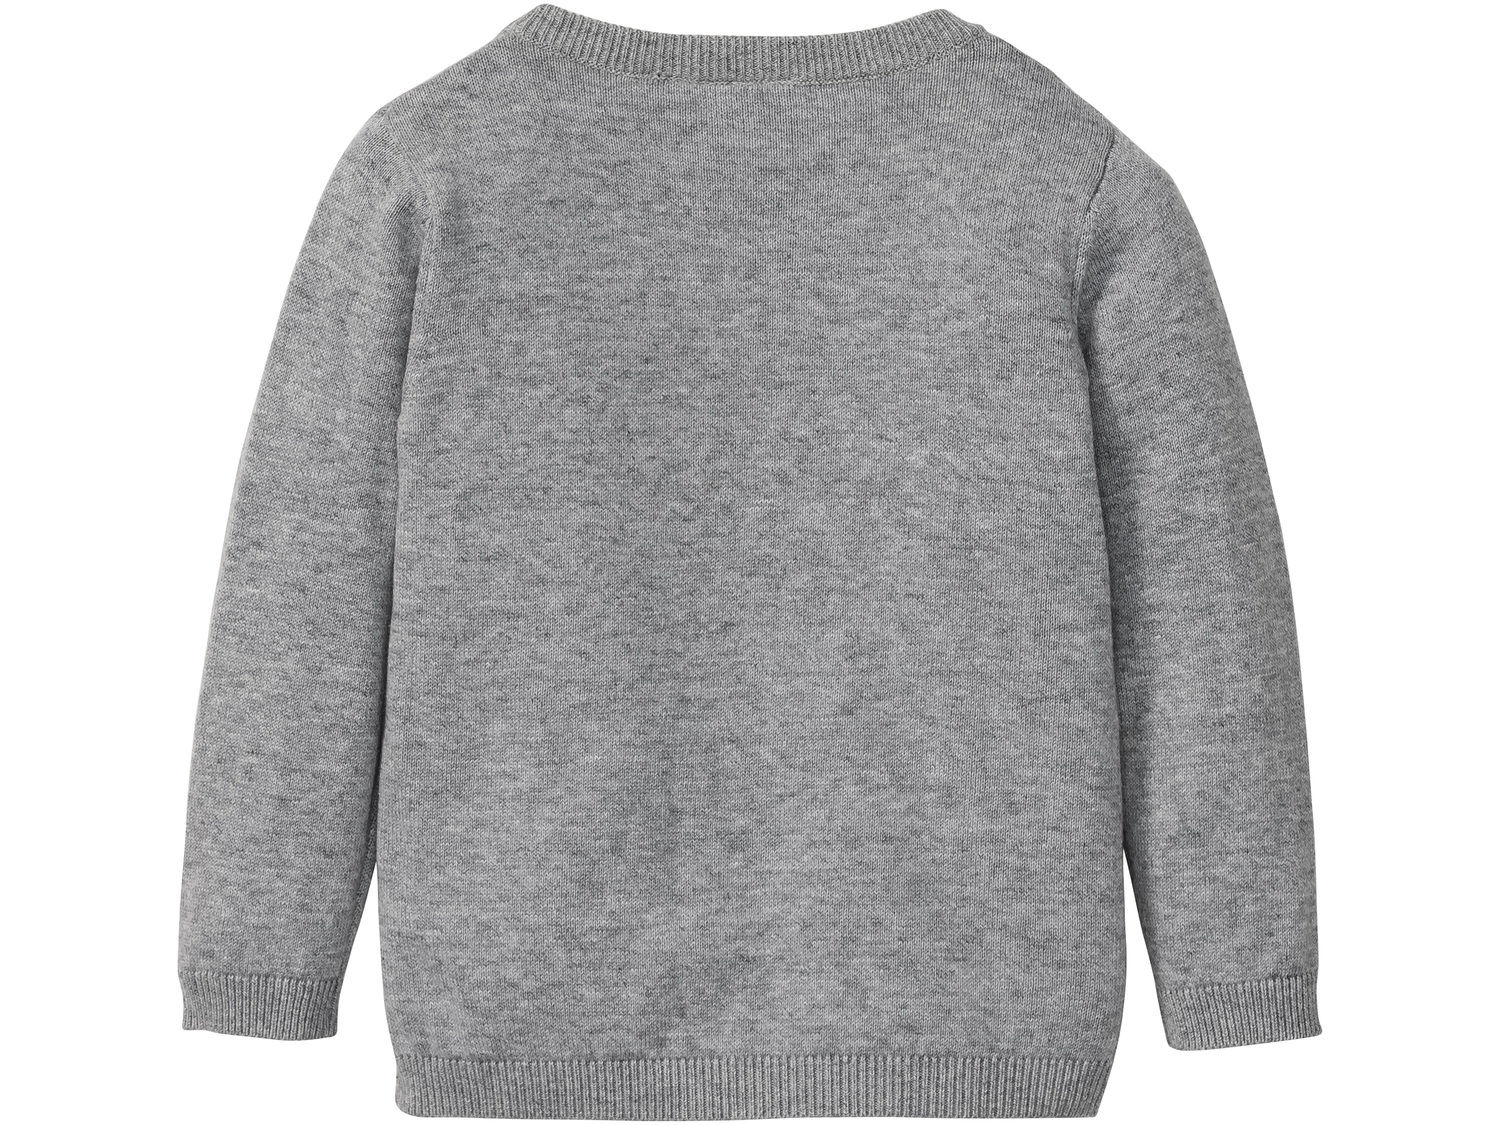 Sweter Lupilu, cena 21,99 &#8364; 
- 100% bawełny
- rozmiary: 98-116
Dostępne ...